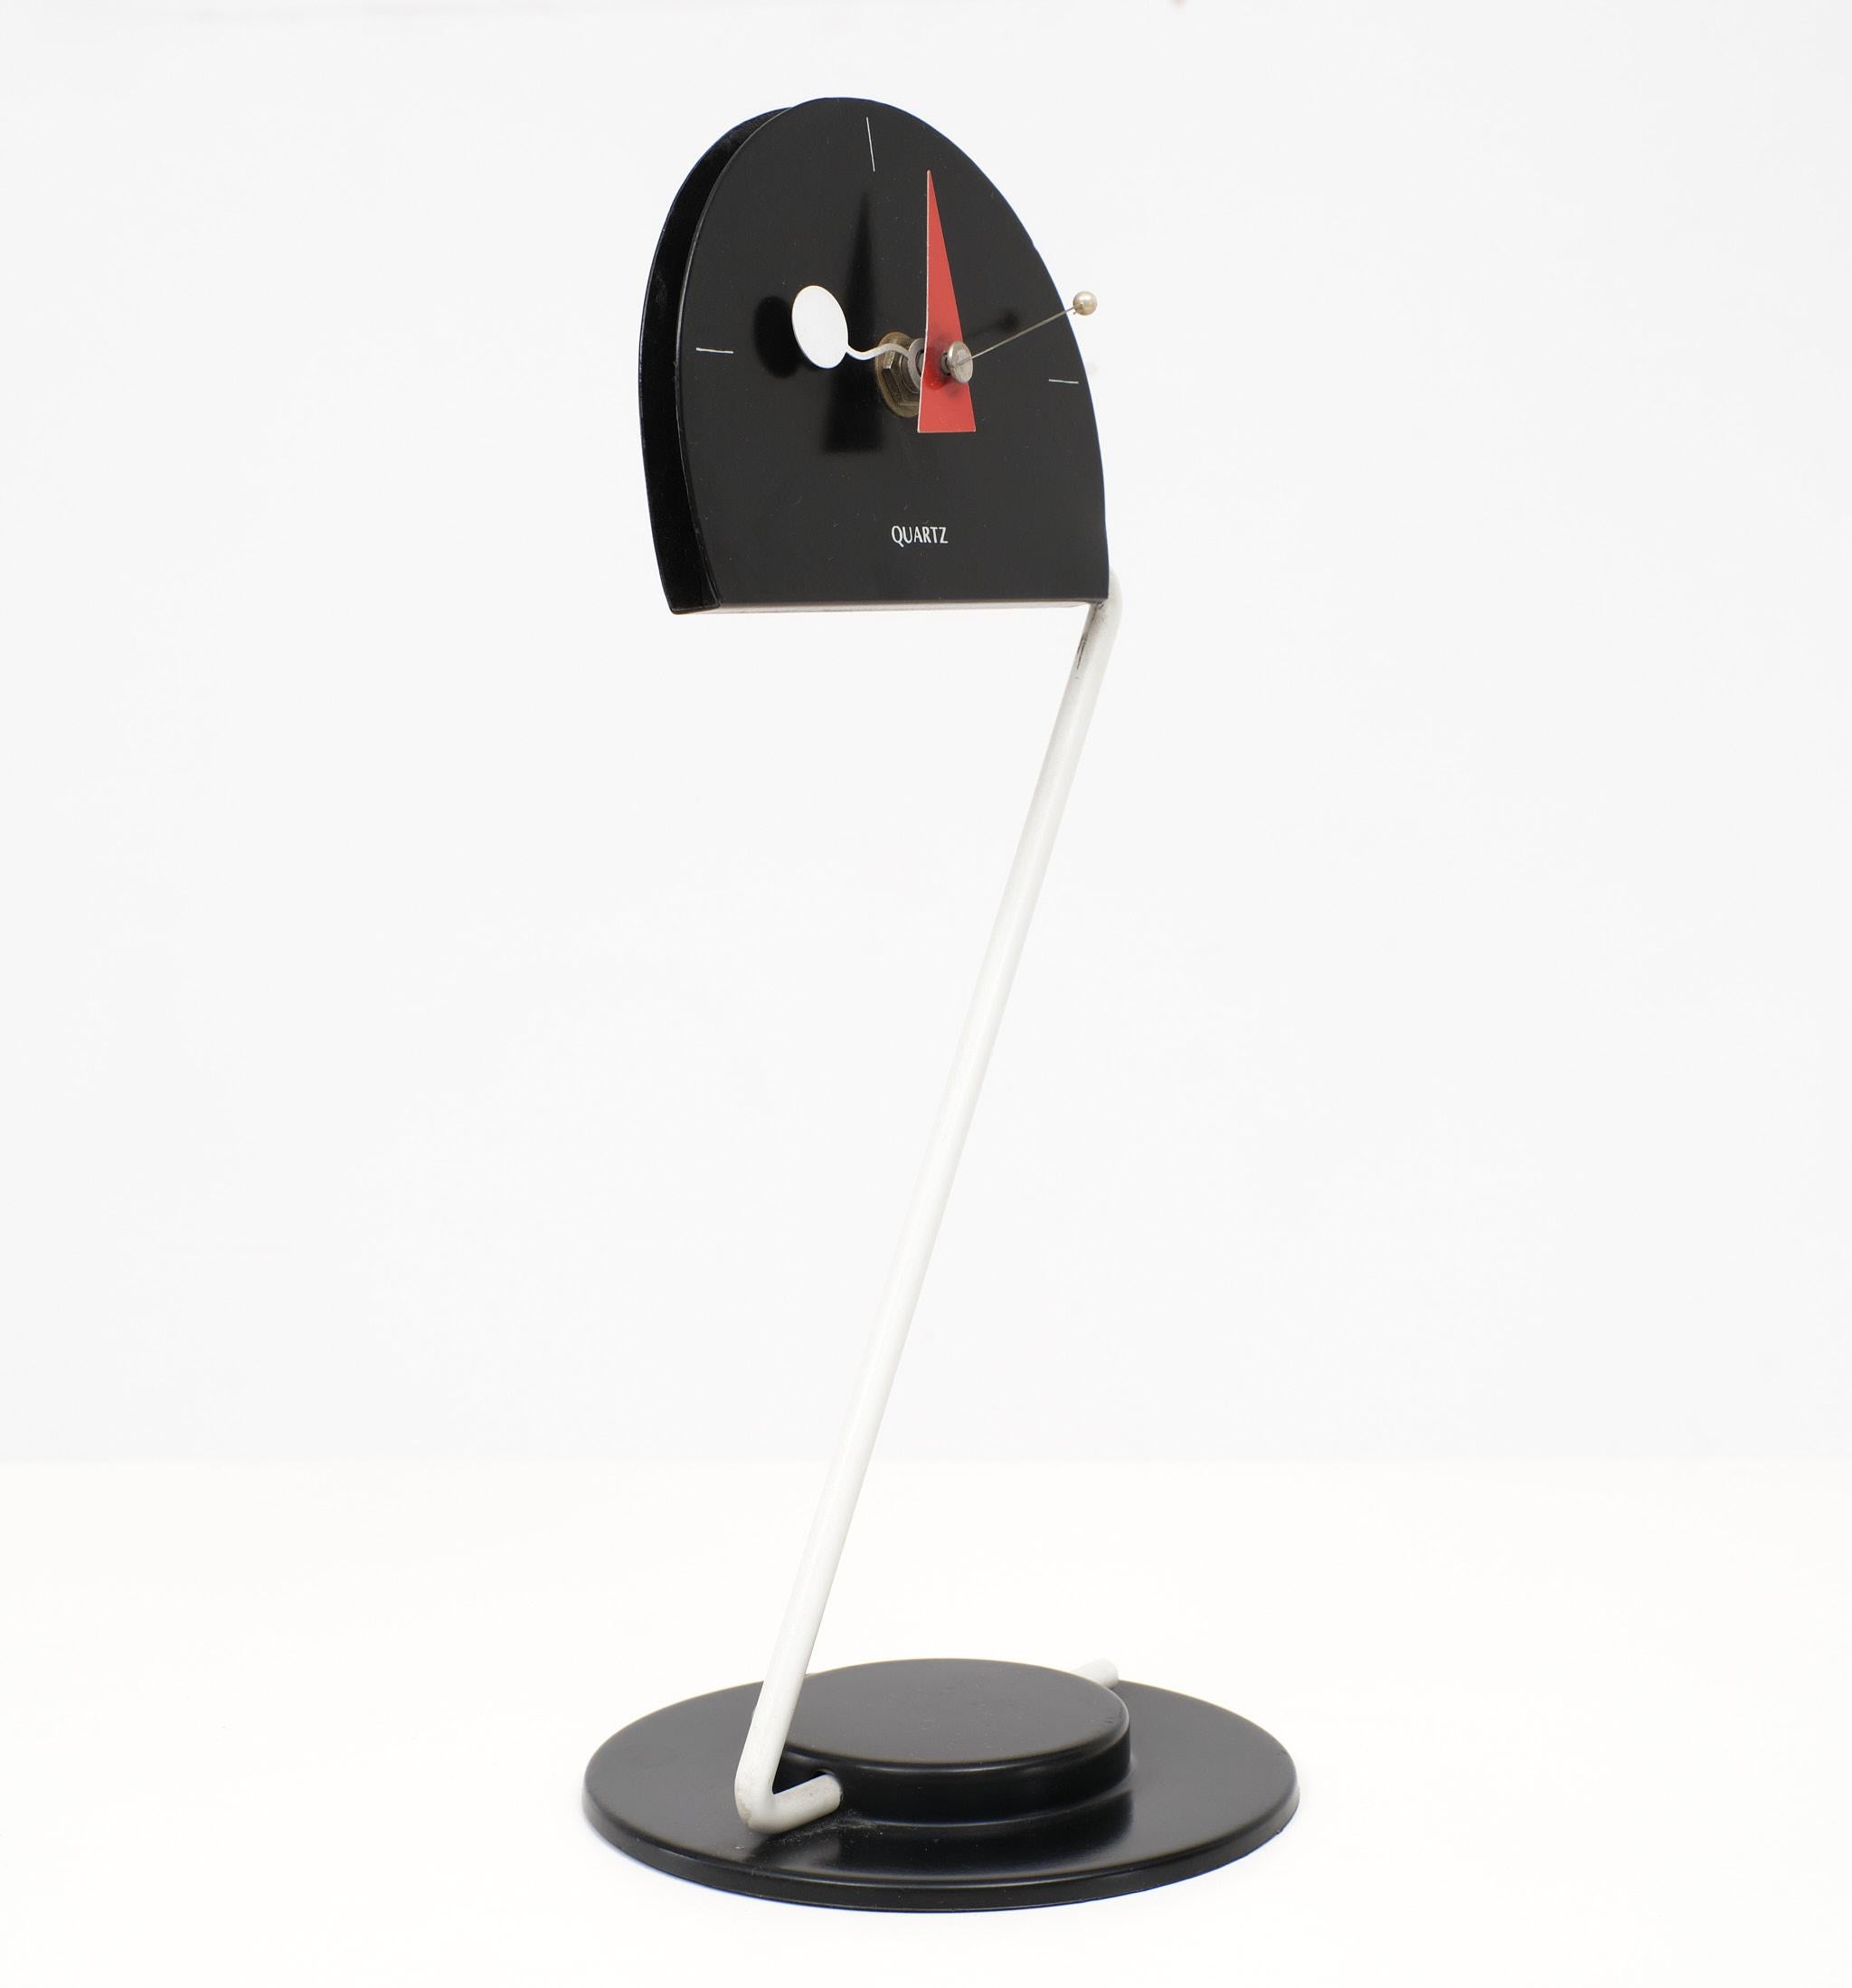 Seltene postmoderne, konstruktivistische, geometrische Artec Collection'S Uhr von Canetti, USA, 1980er Jahre.
Postmoderne Uhr, ArTime Collection, von Canetti, Inc, 1980er Jahre
Diese Uhr hat ein einzigartiges Uhrwerk, das durch die geometrische Form